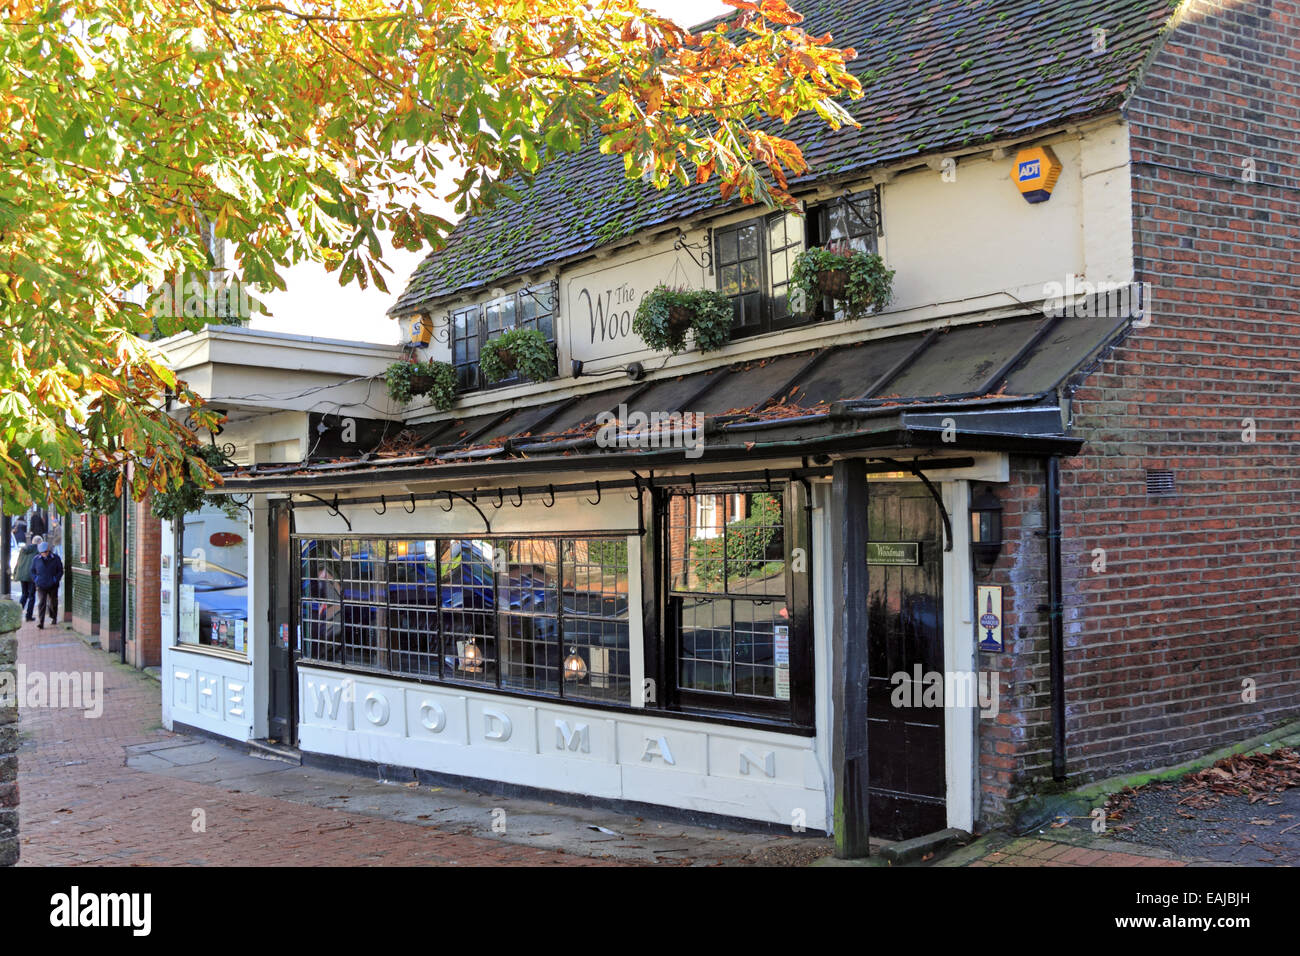 The Woodman pub Carshalton, Surrey, England, UK. Stock Photo